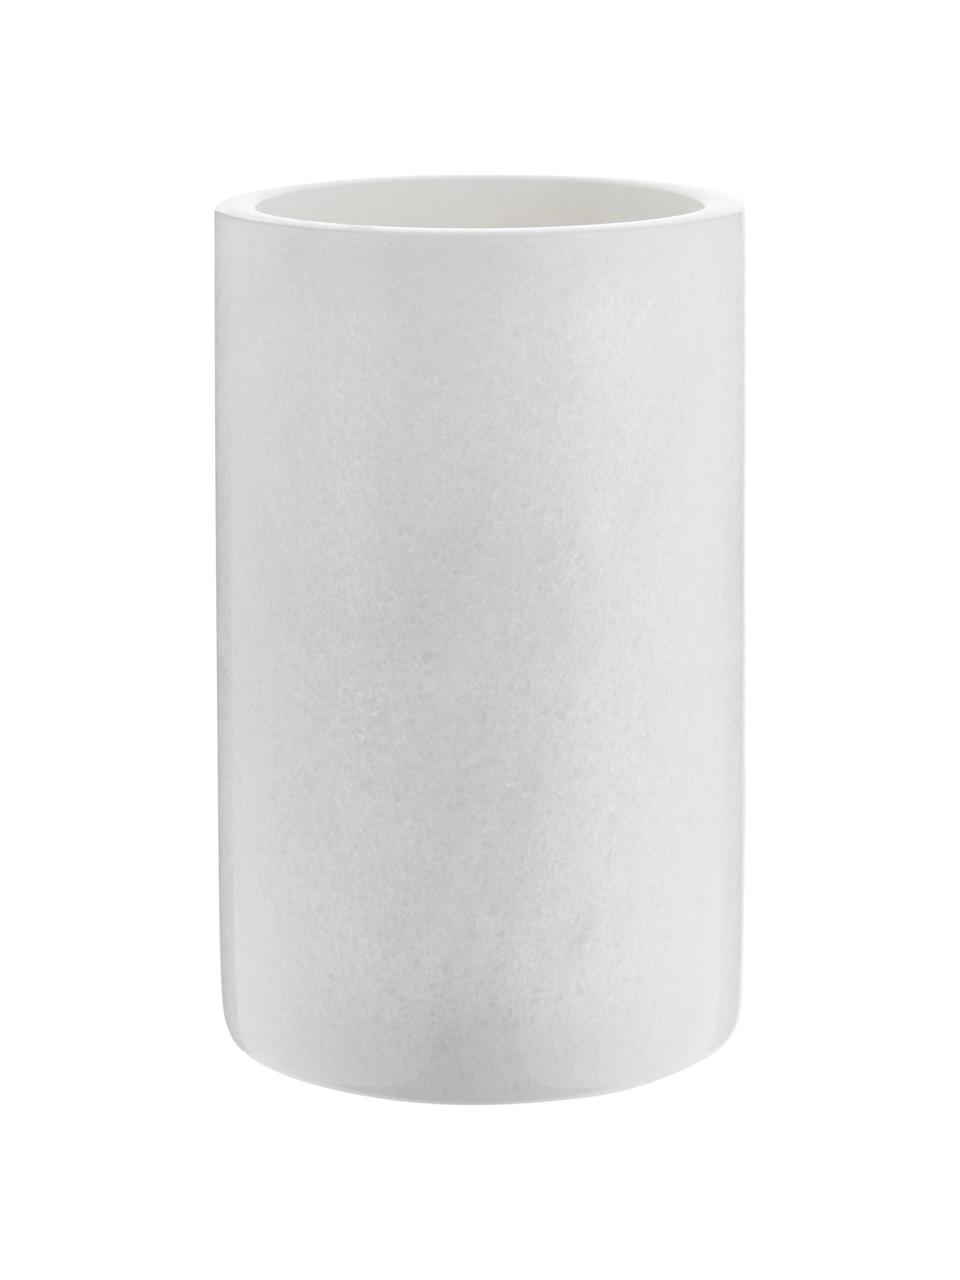 Marmor-Flaschenkühler Charlie in Weiss, Marmor, Weisser Marmor, Ø 12 x H 19 cm